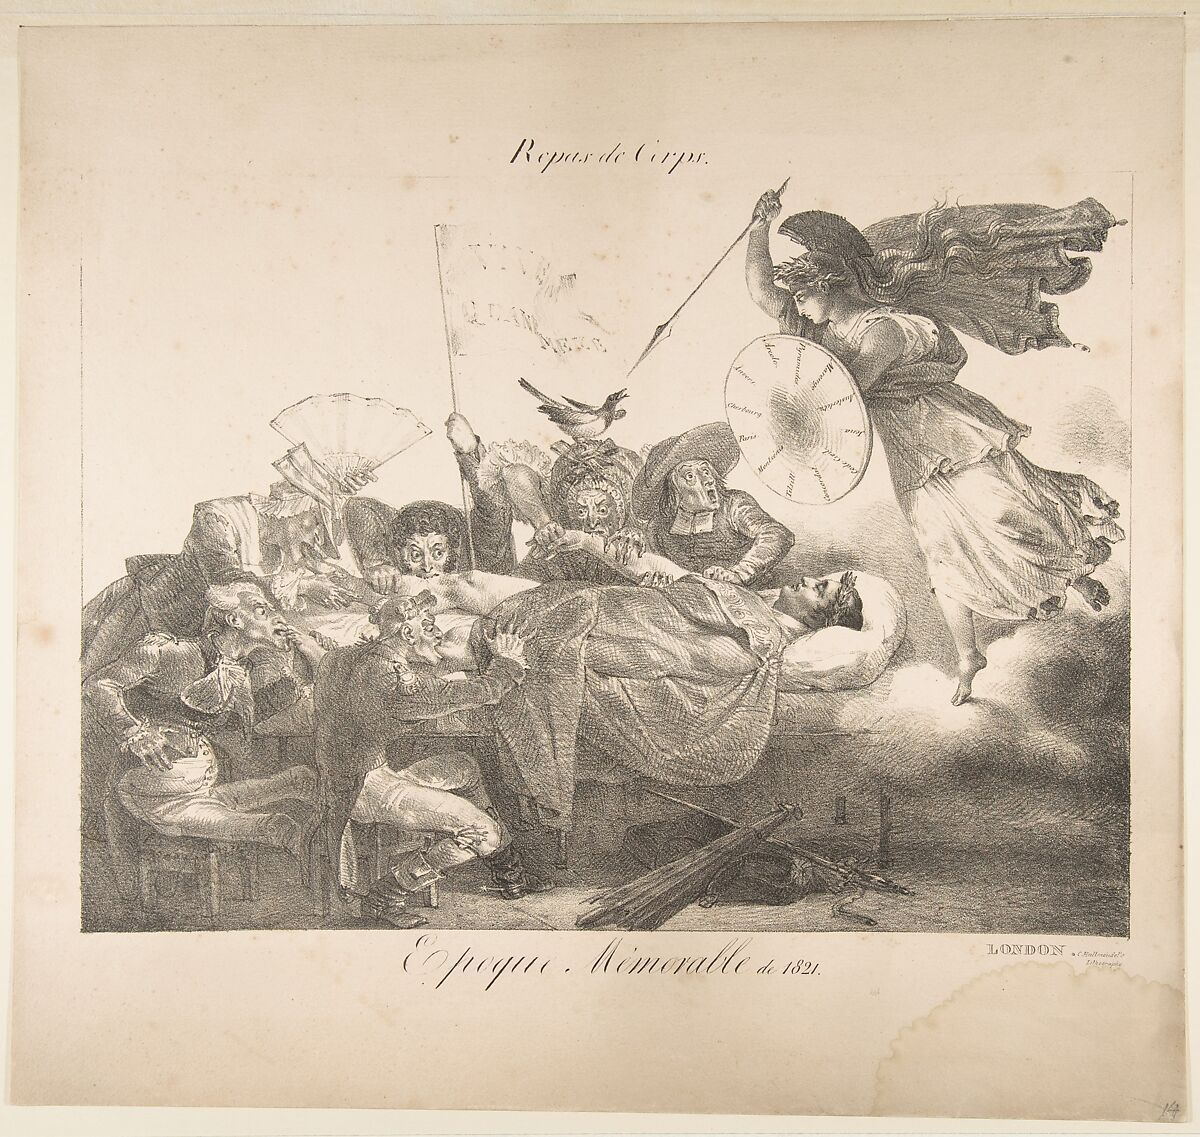 Repas de Corps. Epoque Mémorable de 1821, Charles Joseph Hullmandel (British, London 1789–1850 London), Lithograph 